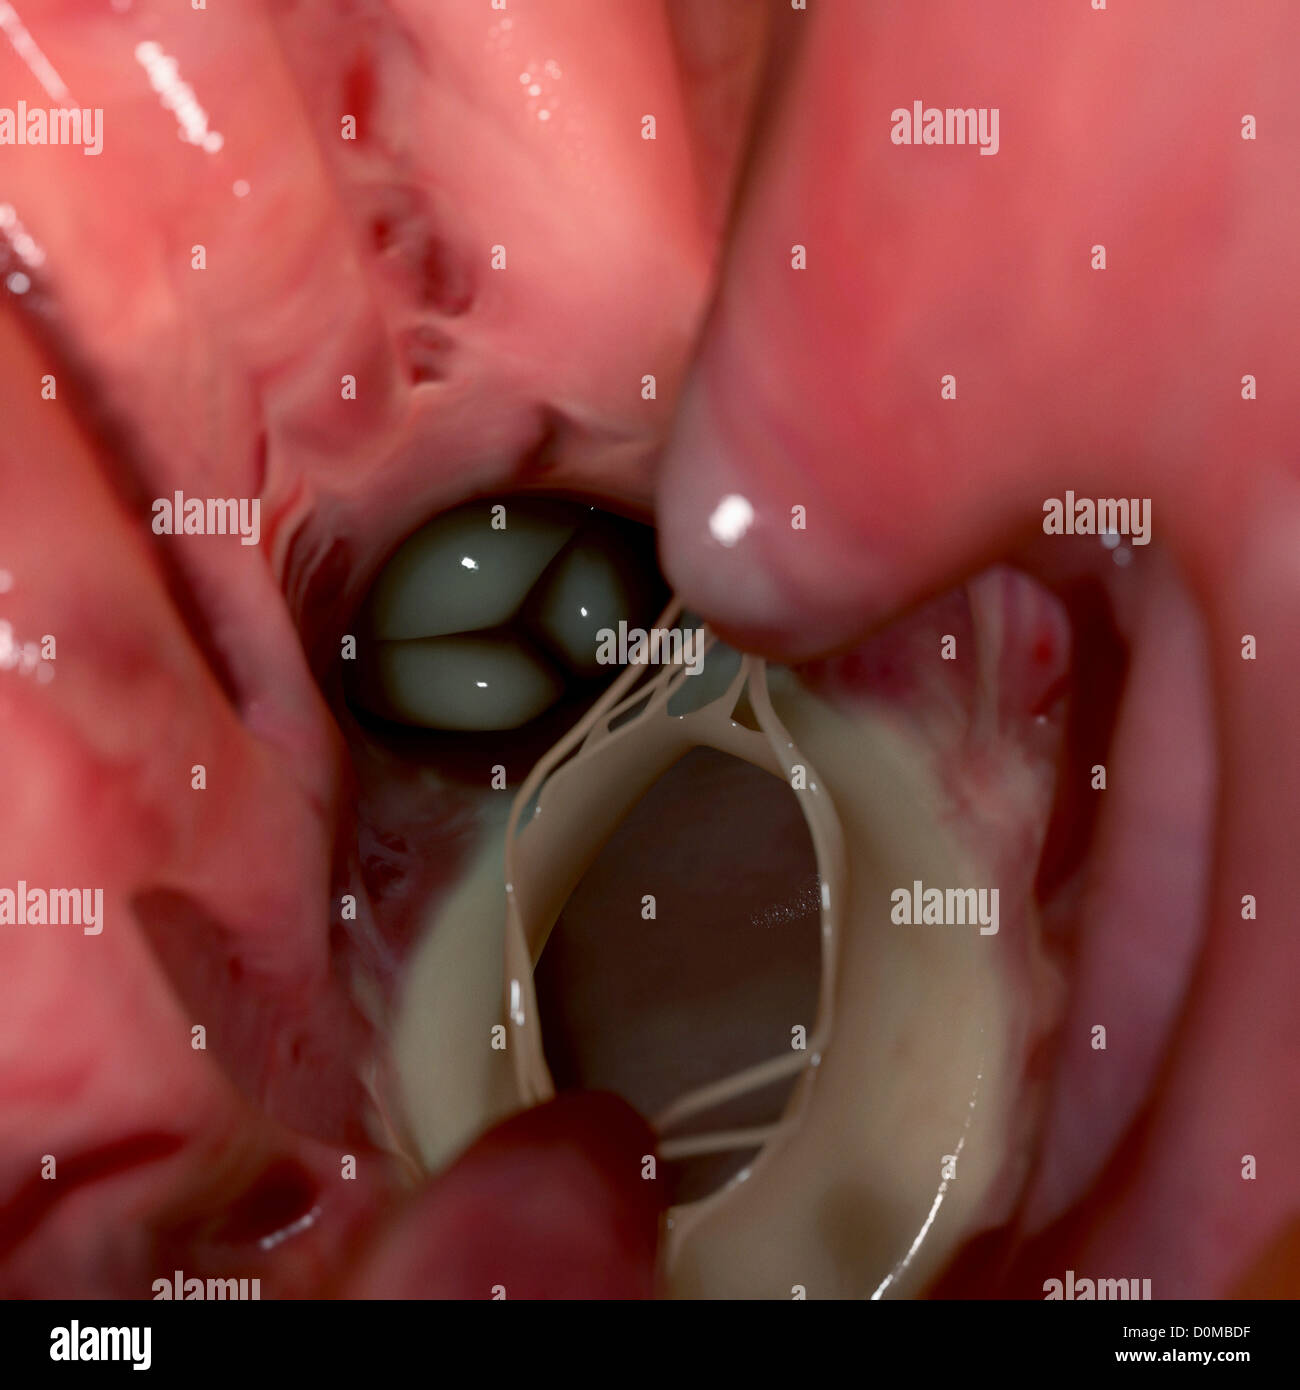 Vista interna della valvola aortica, nel ventricolo sinistro del cuore umano. Foto Stock